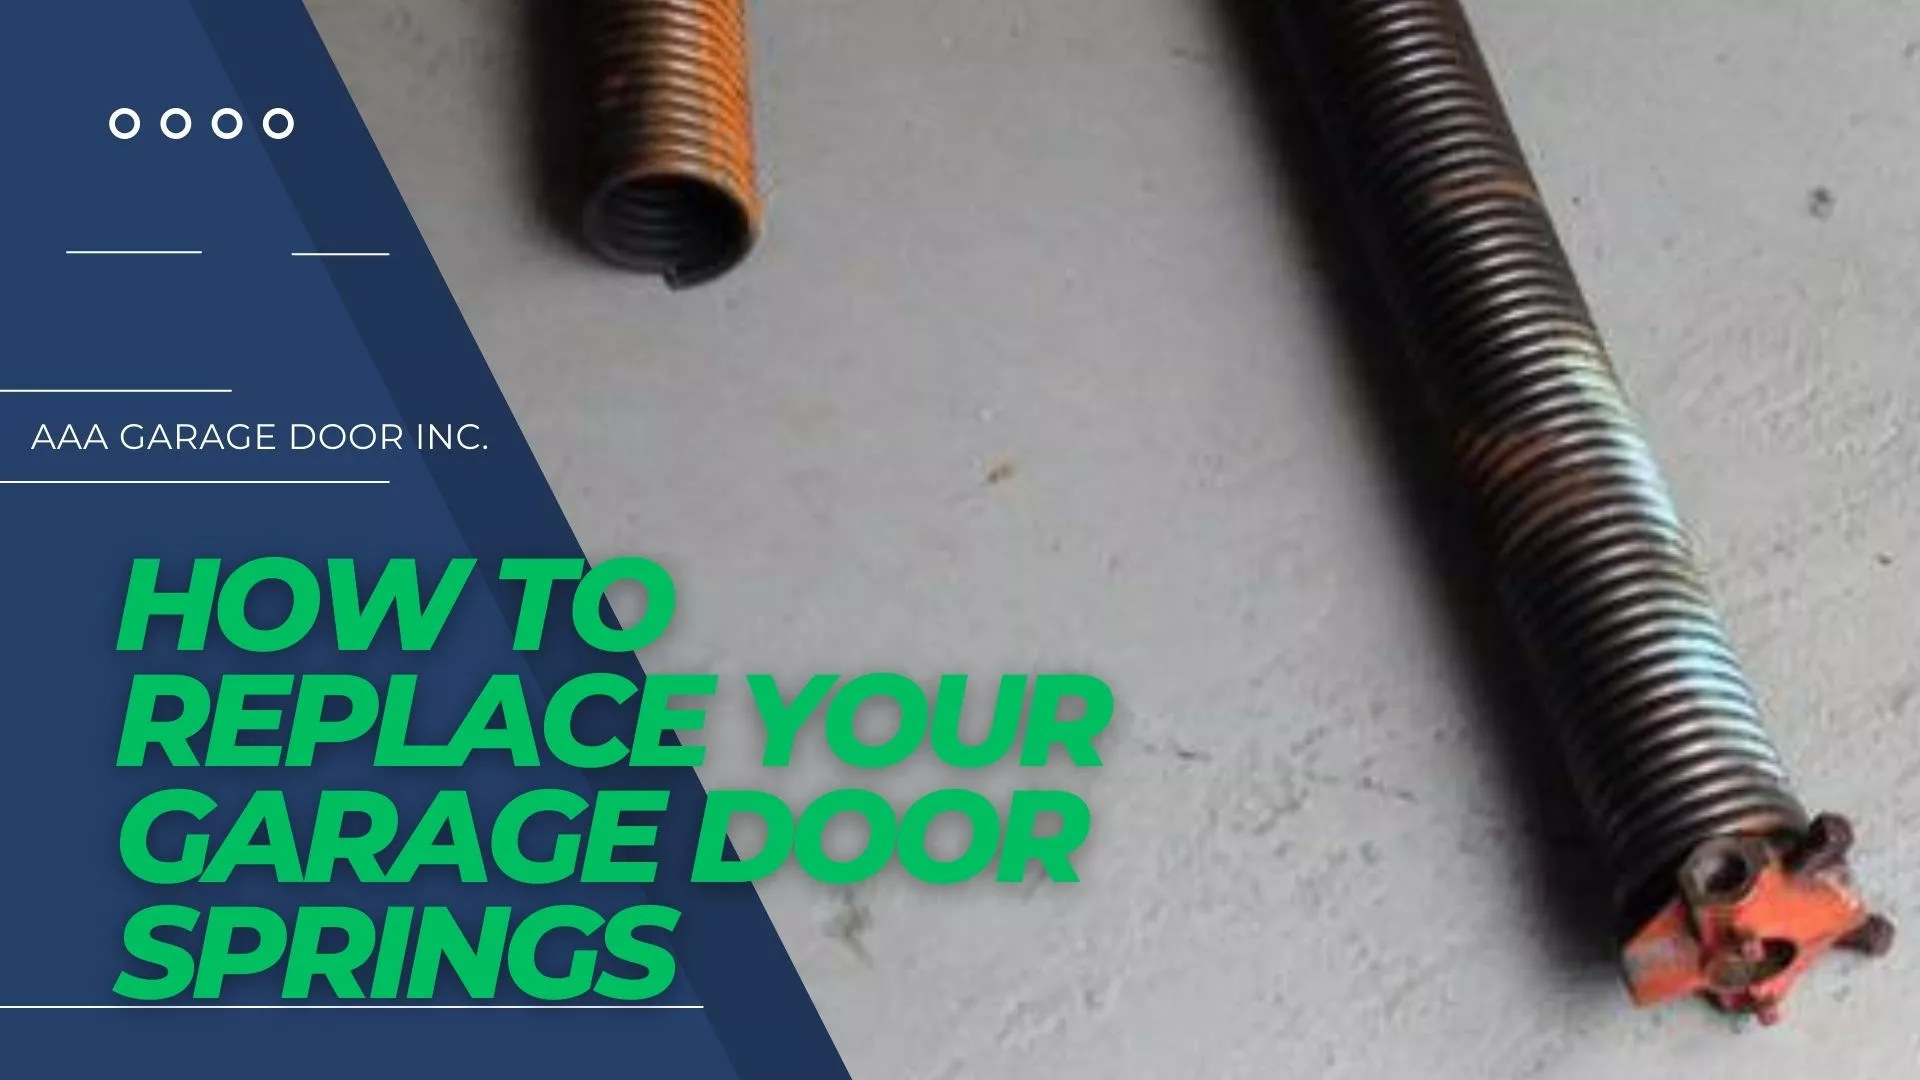 How to replace your garage door springs jpg How to replace garage door springs